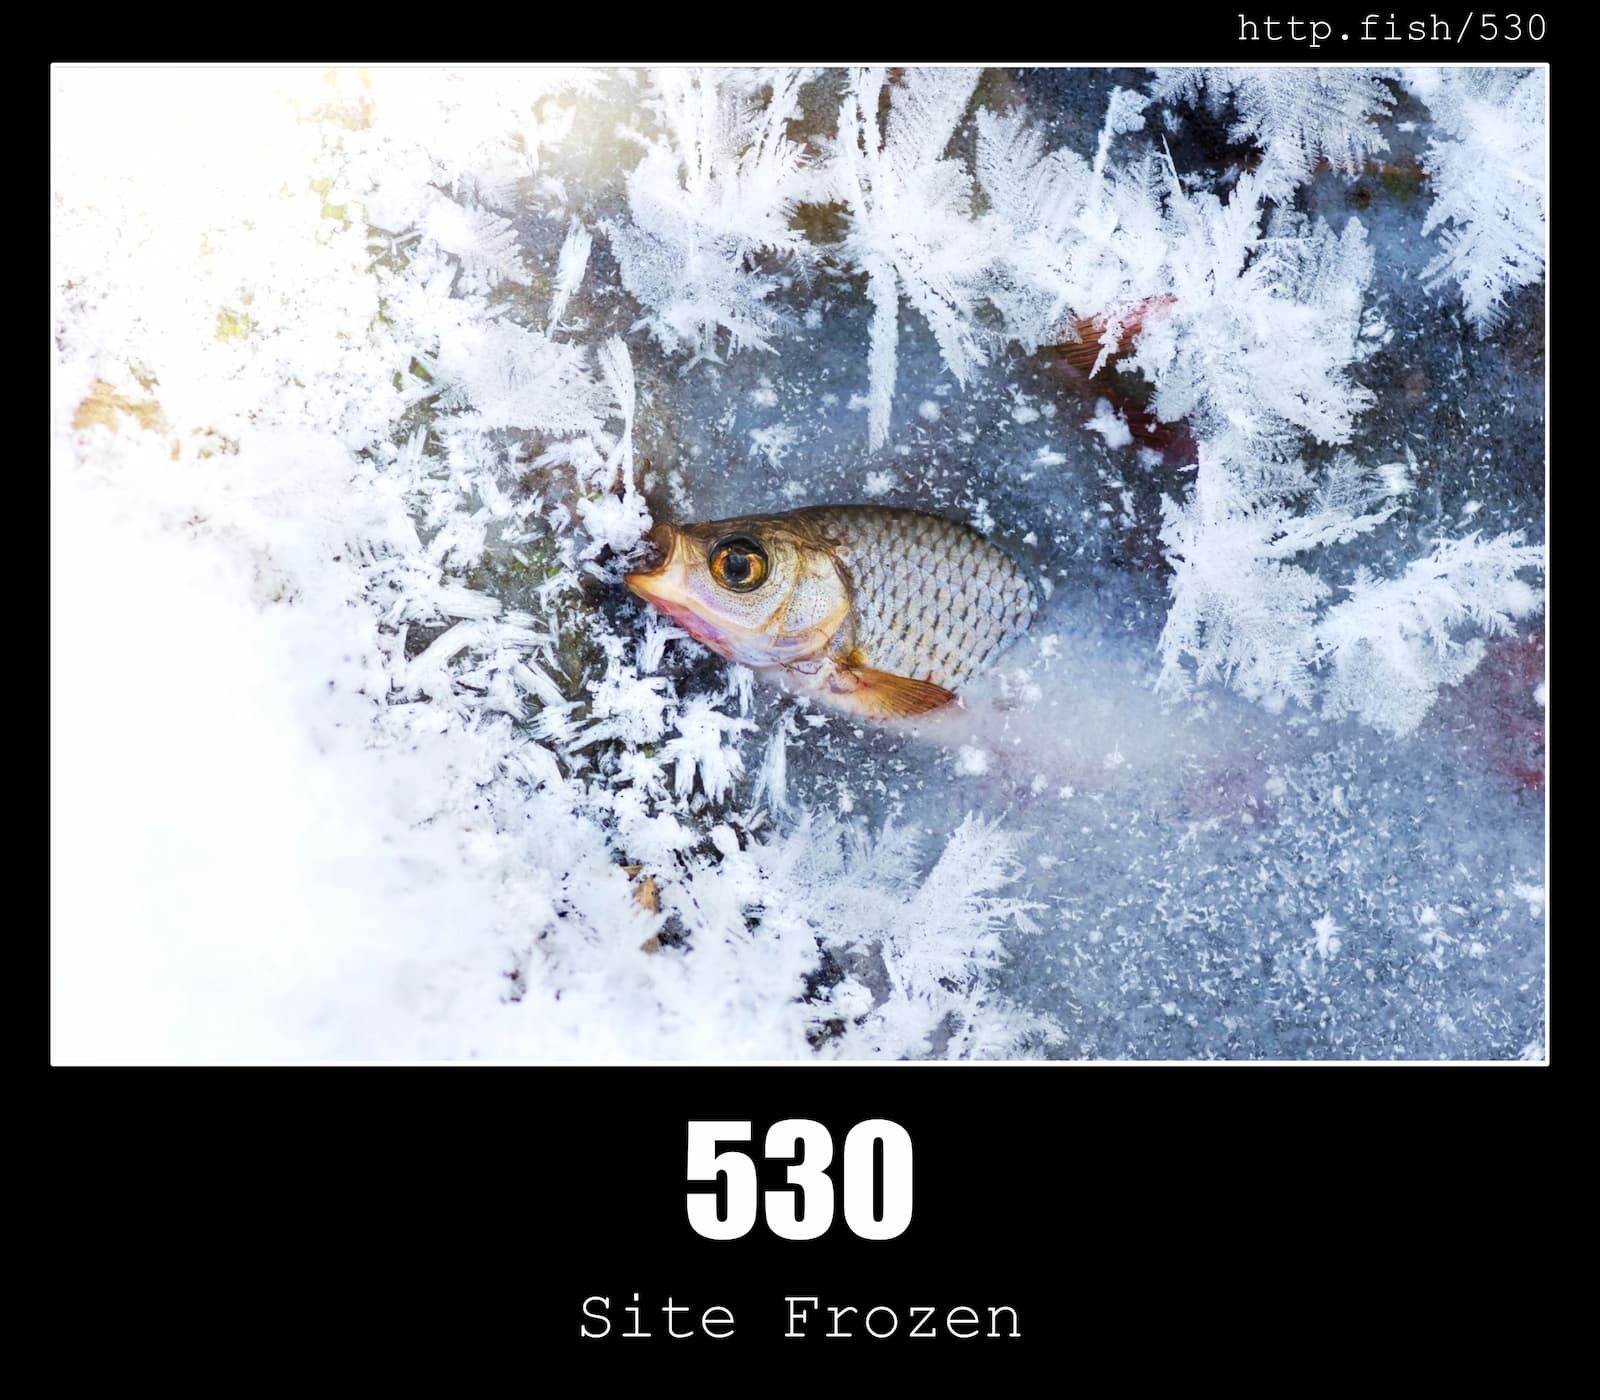 HTTP Status Code 530 Site Frozen & Fish